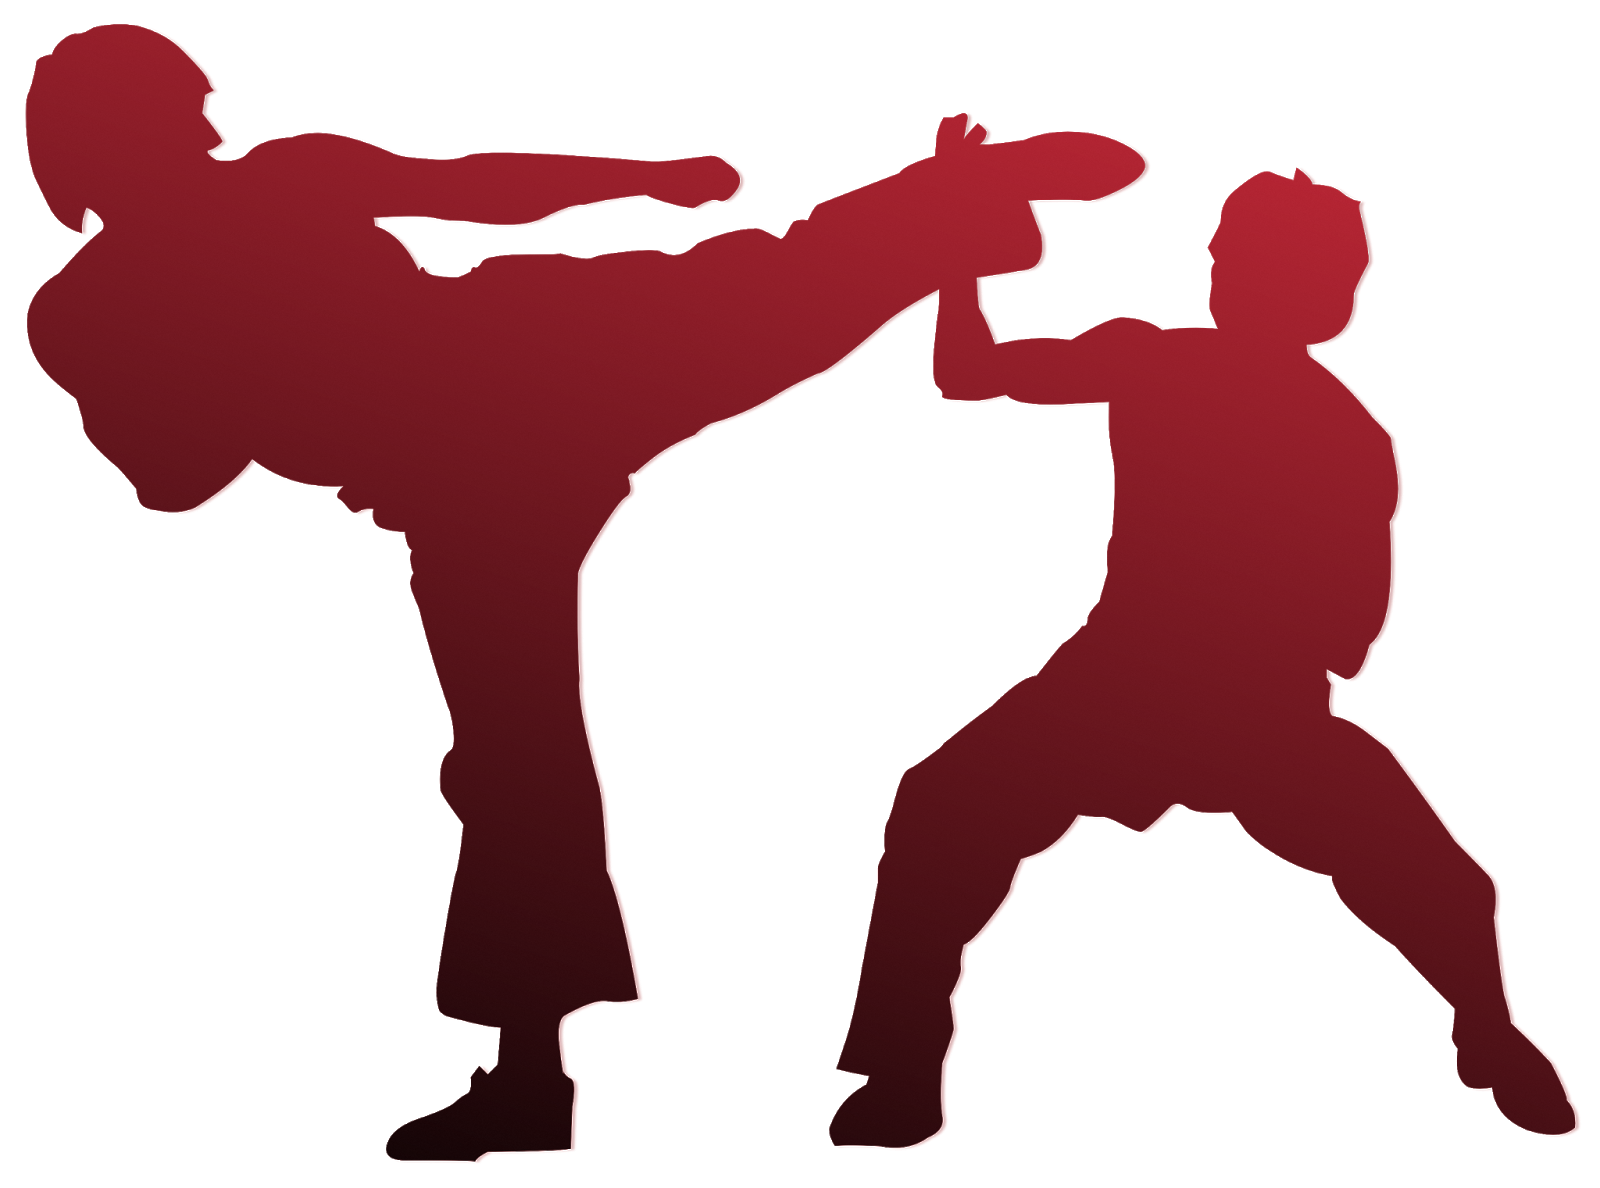 Villari Shaolin Kempo Karate: What is Kempo?